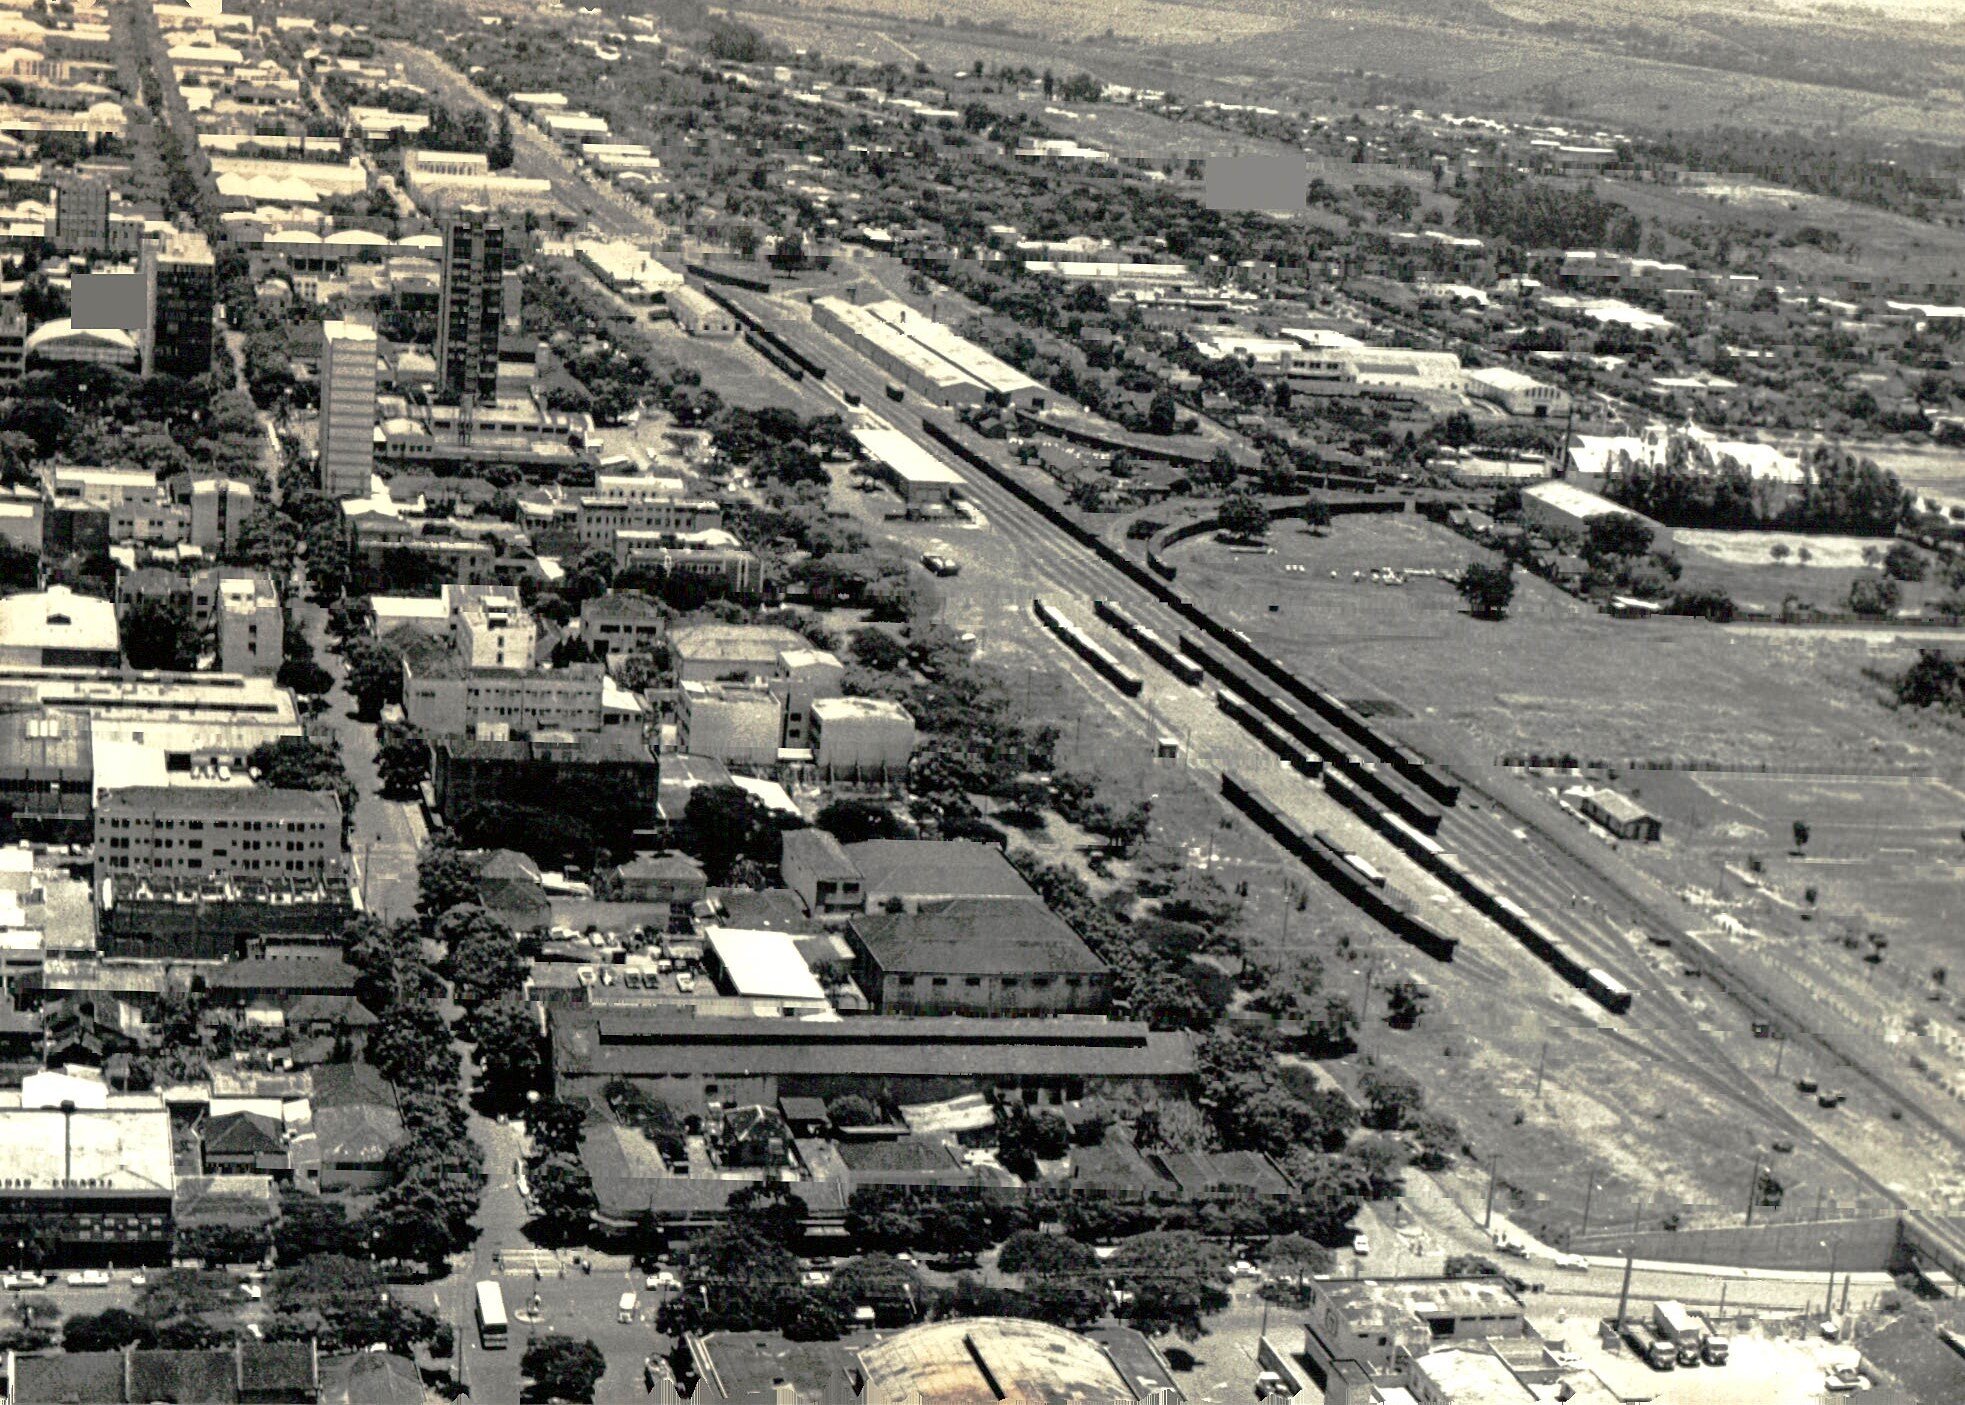 Vista aérea da região central - Década de 1970